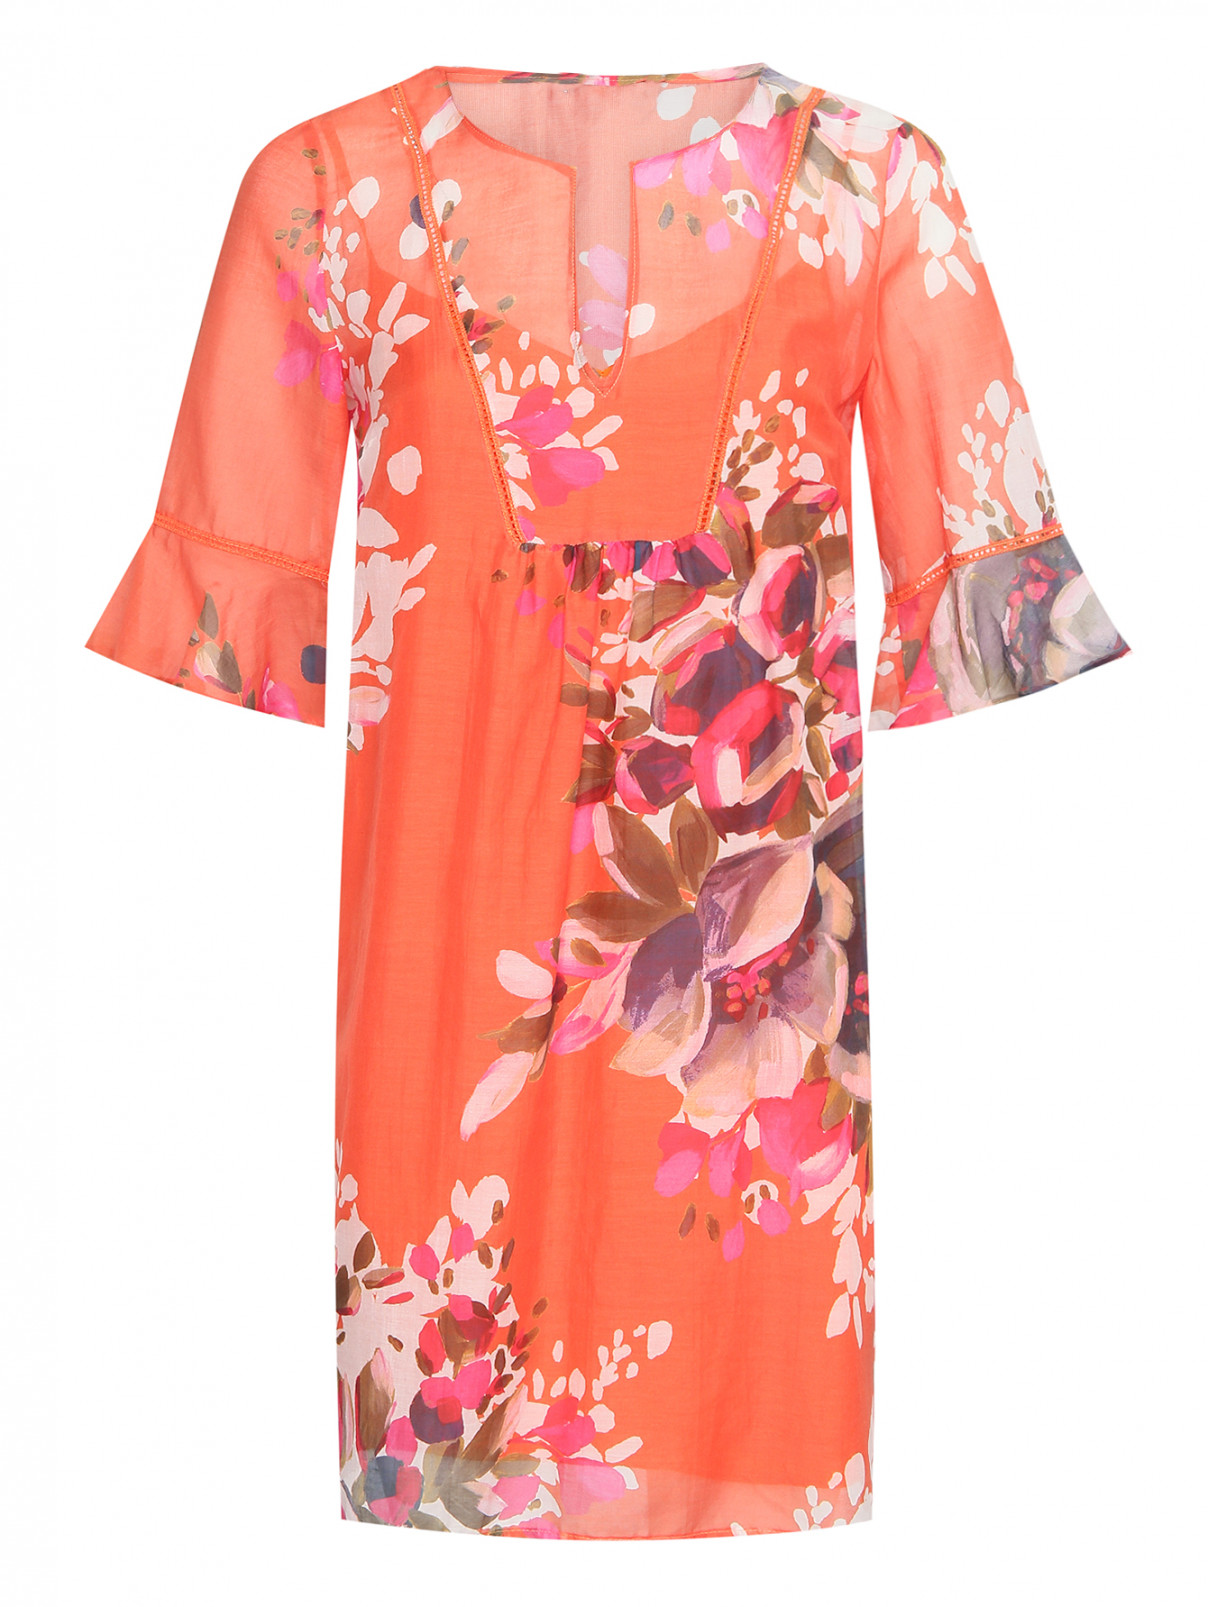 Платье из хлопка и шелка с цветочным принтом Caractere  –  Общий вид  – Цвет:  Оранжевый